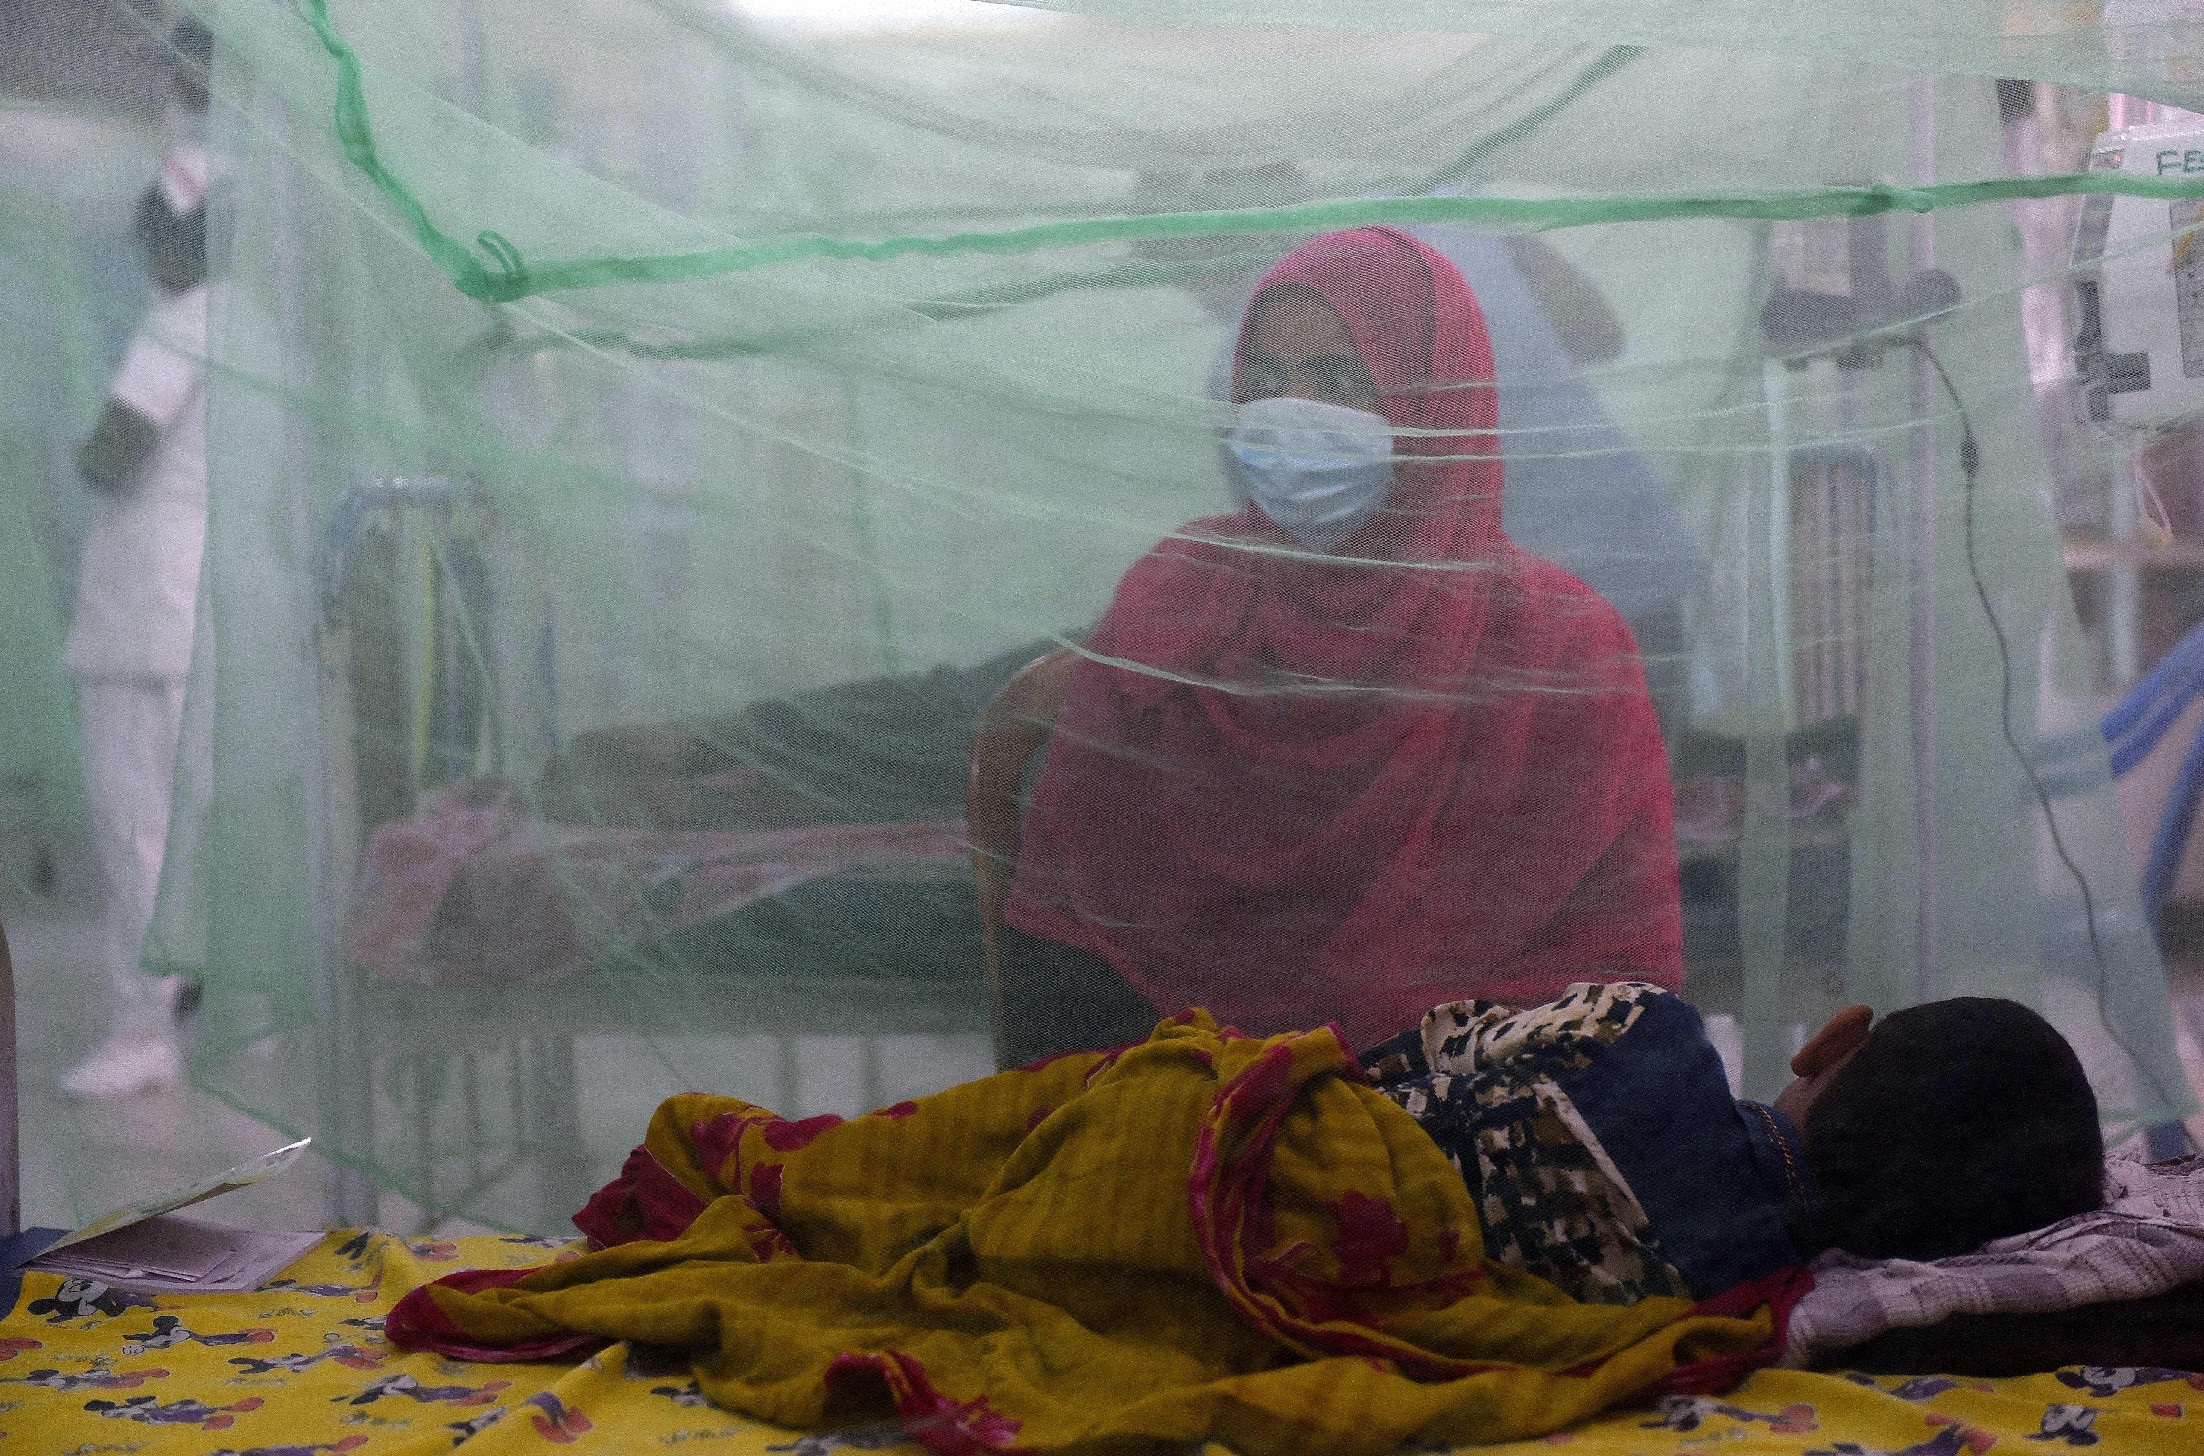 WHO: Járványokkal terhes idők elé nézünk az El Niño miatt